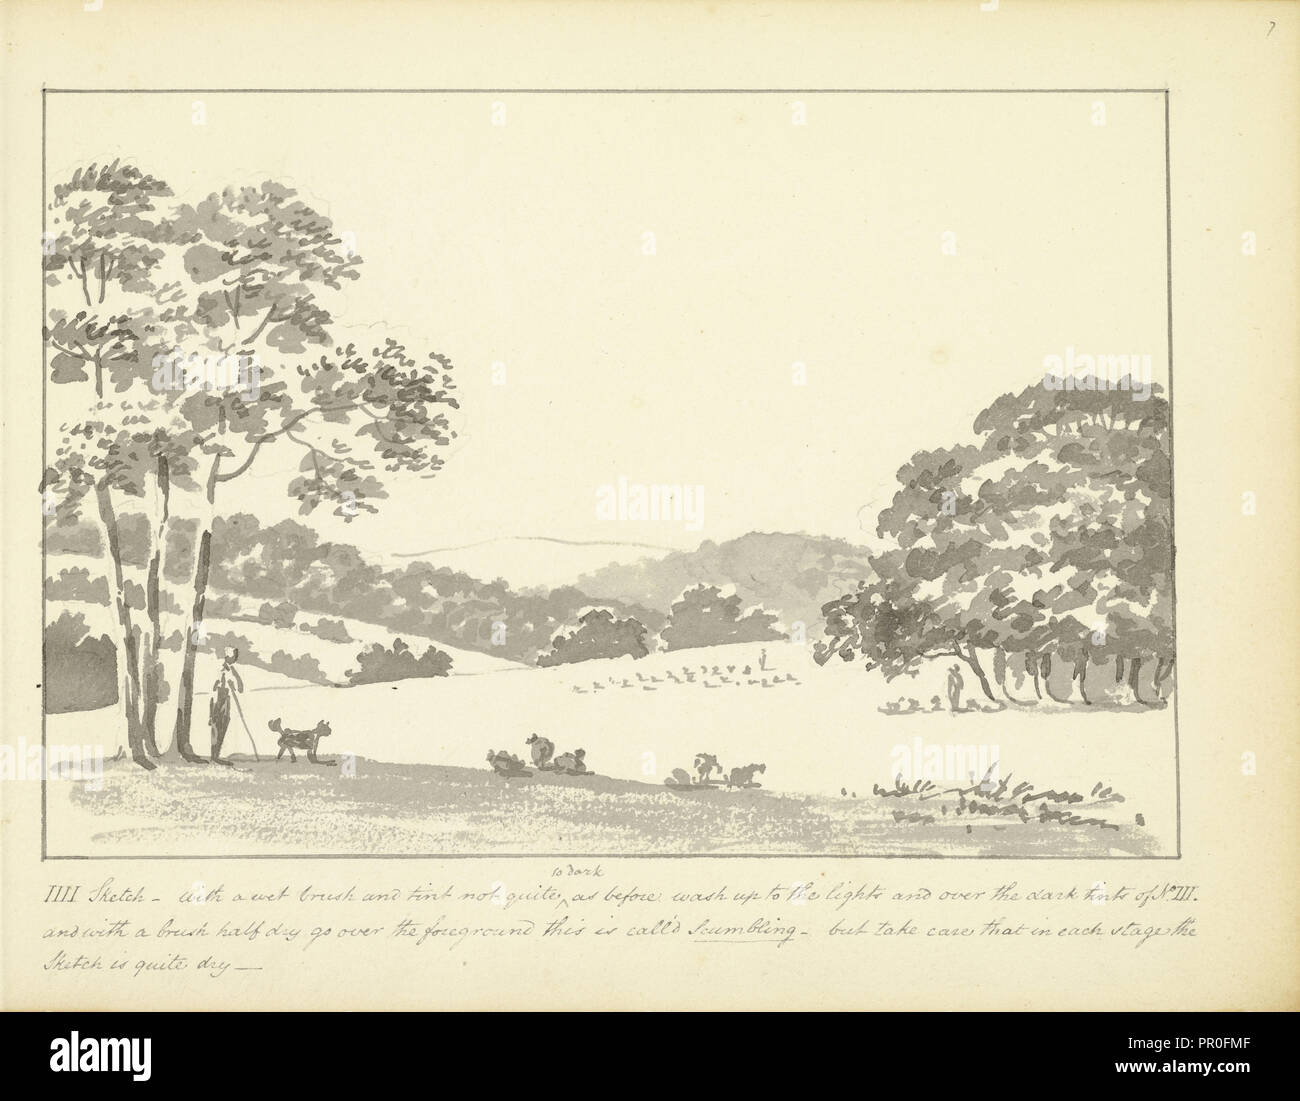 IIII Skizze - mit einem nassen Pinsel und Tönung, ein paar Hinweise über landschaftsskizzen, Ca. 1810, Humphry Repton Architektur Stockfoto